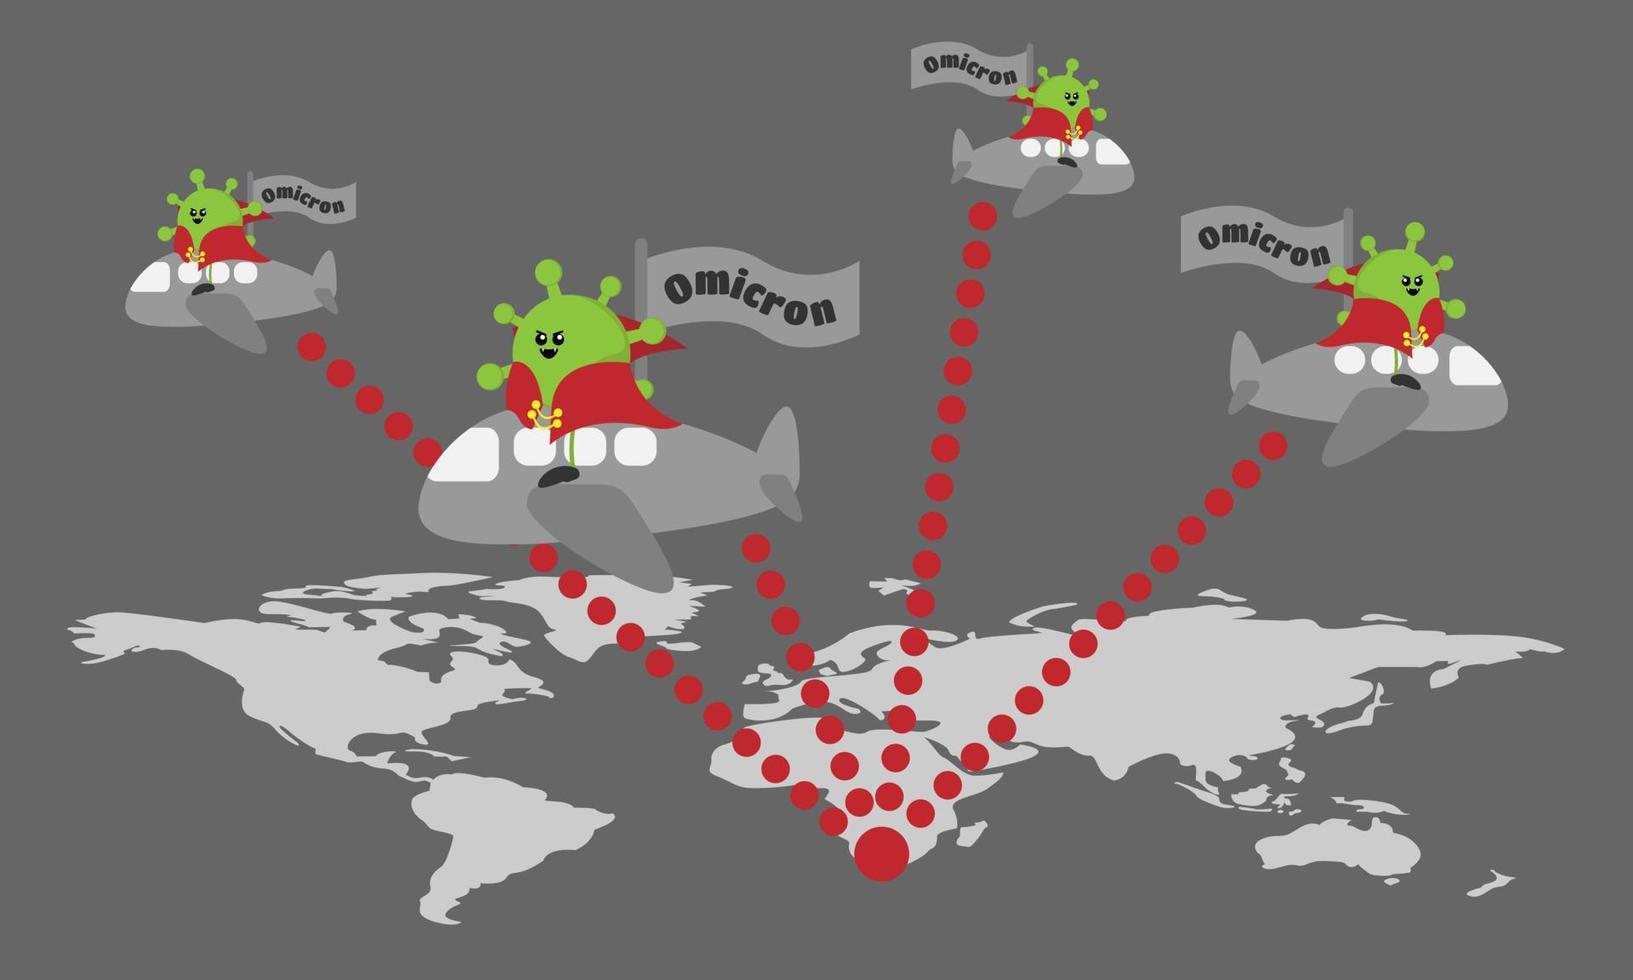 La variante omicron del virus corona se propaga desde Sudáfrica a todo el mundo en avión. Adecuado para medios de comunicación, educación, etc. vector